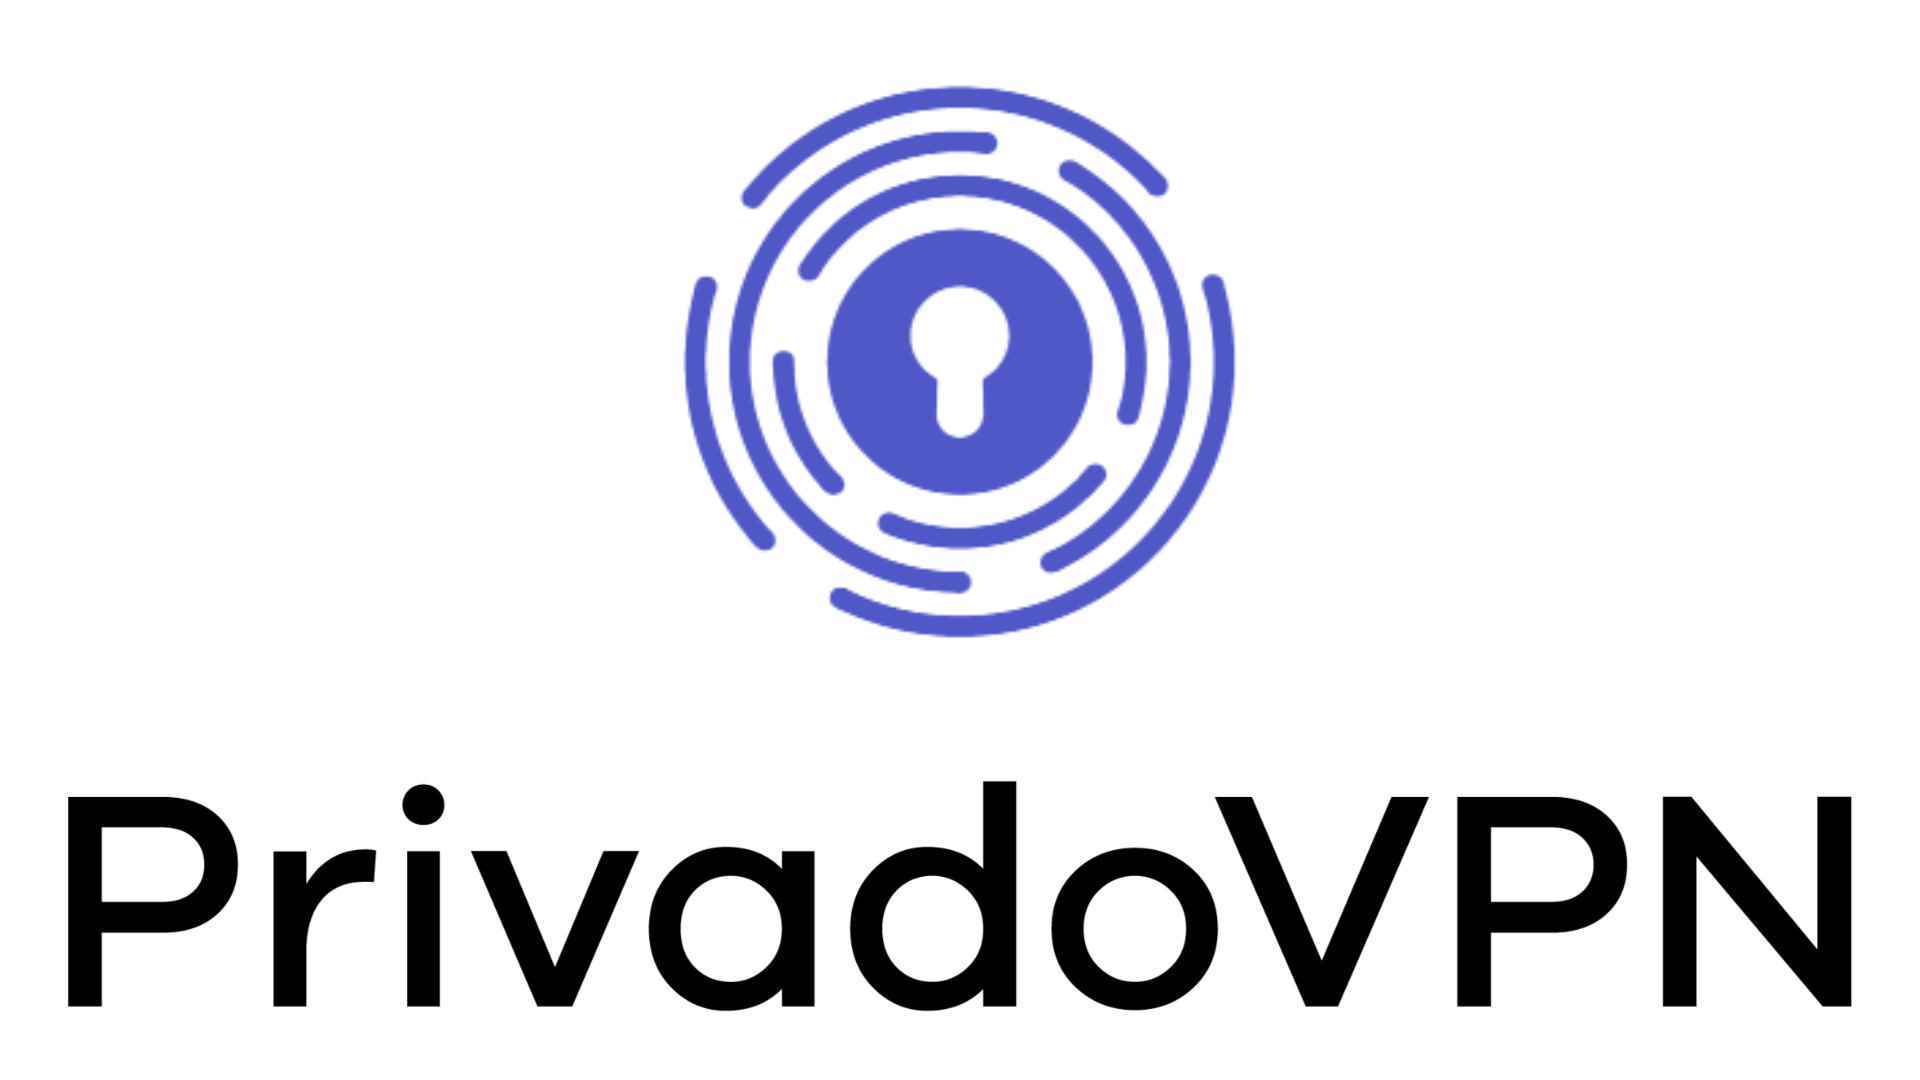 En iyi ücretsiz VPN, PrivadoVPN.  Logosu beyaz zemin üzerinedir.